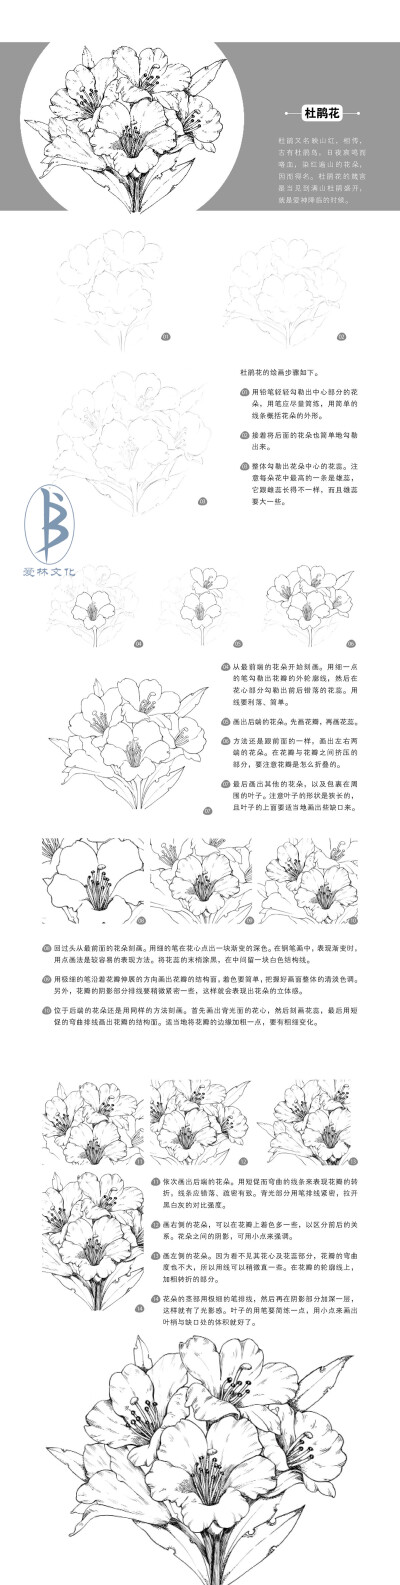 本案例摘自人民邮电出版社出版的《黑白绘：钢笔画完全自学教程》--爱林文化制作
